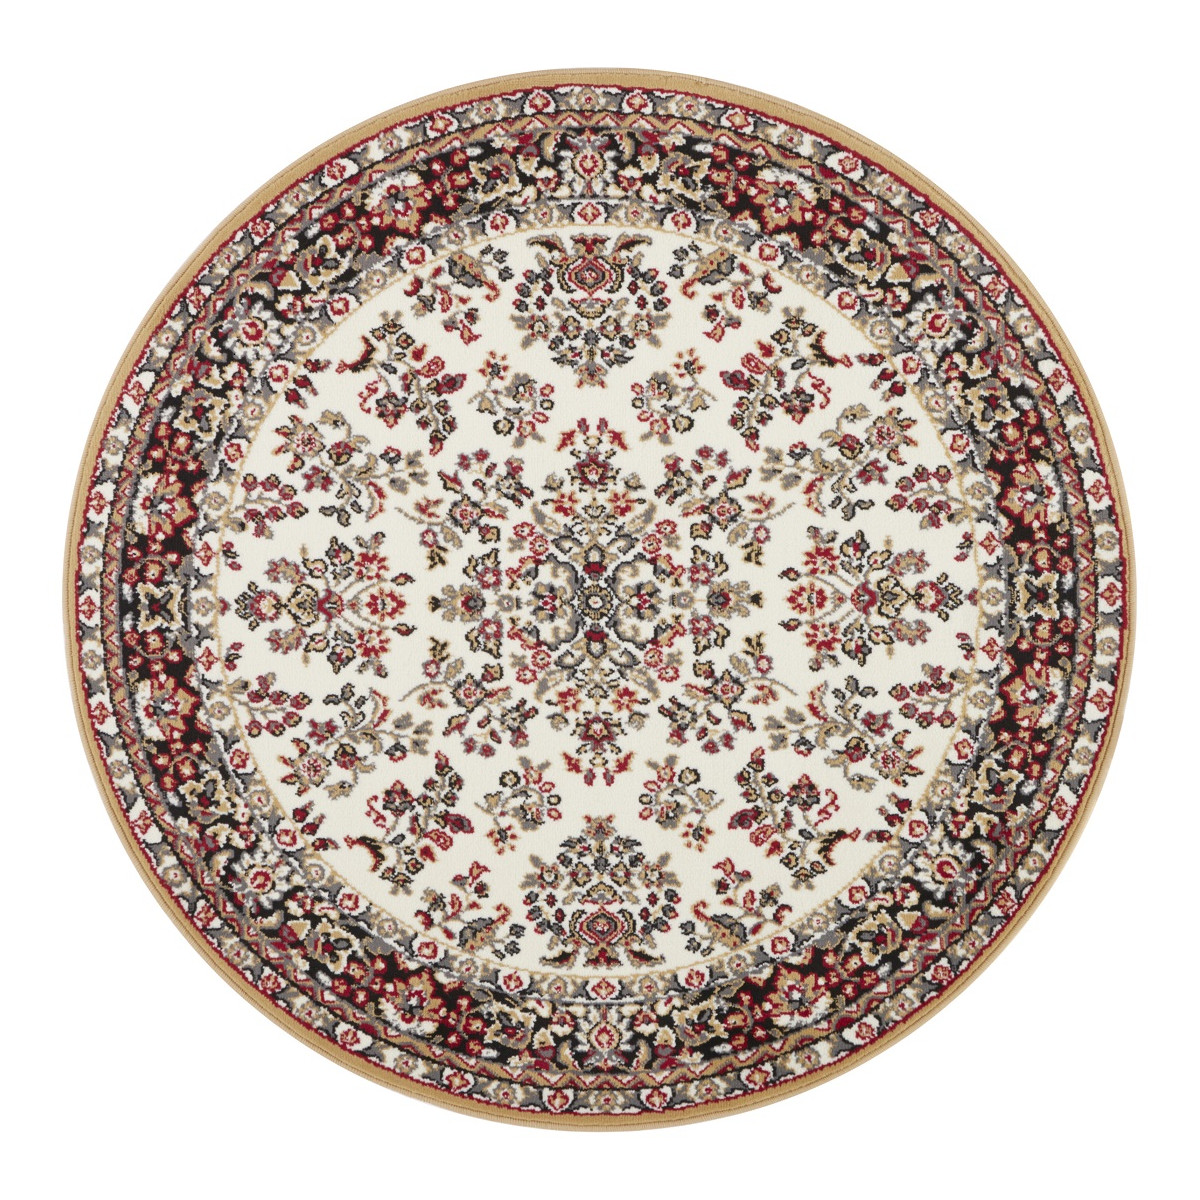 Kusový orientálny koberec Mujkoberec Original 104349 Kruh